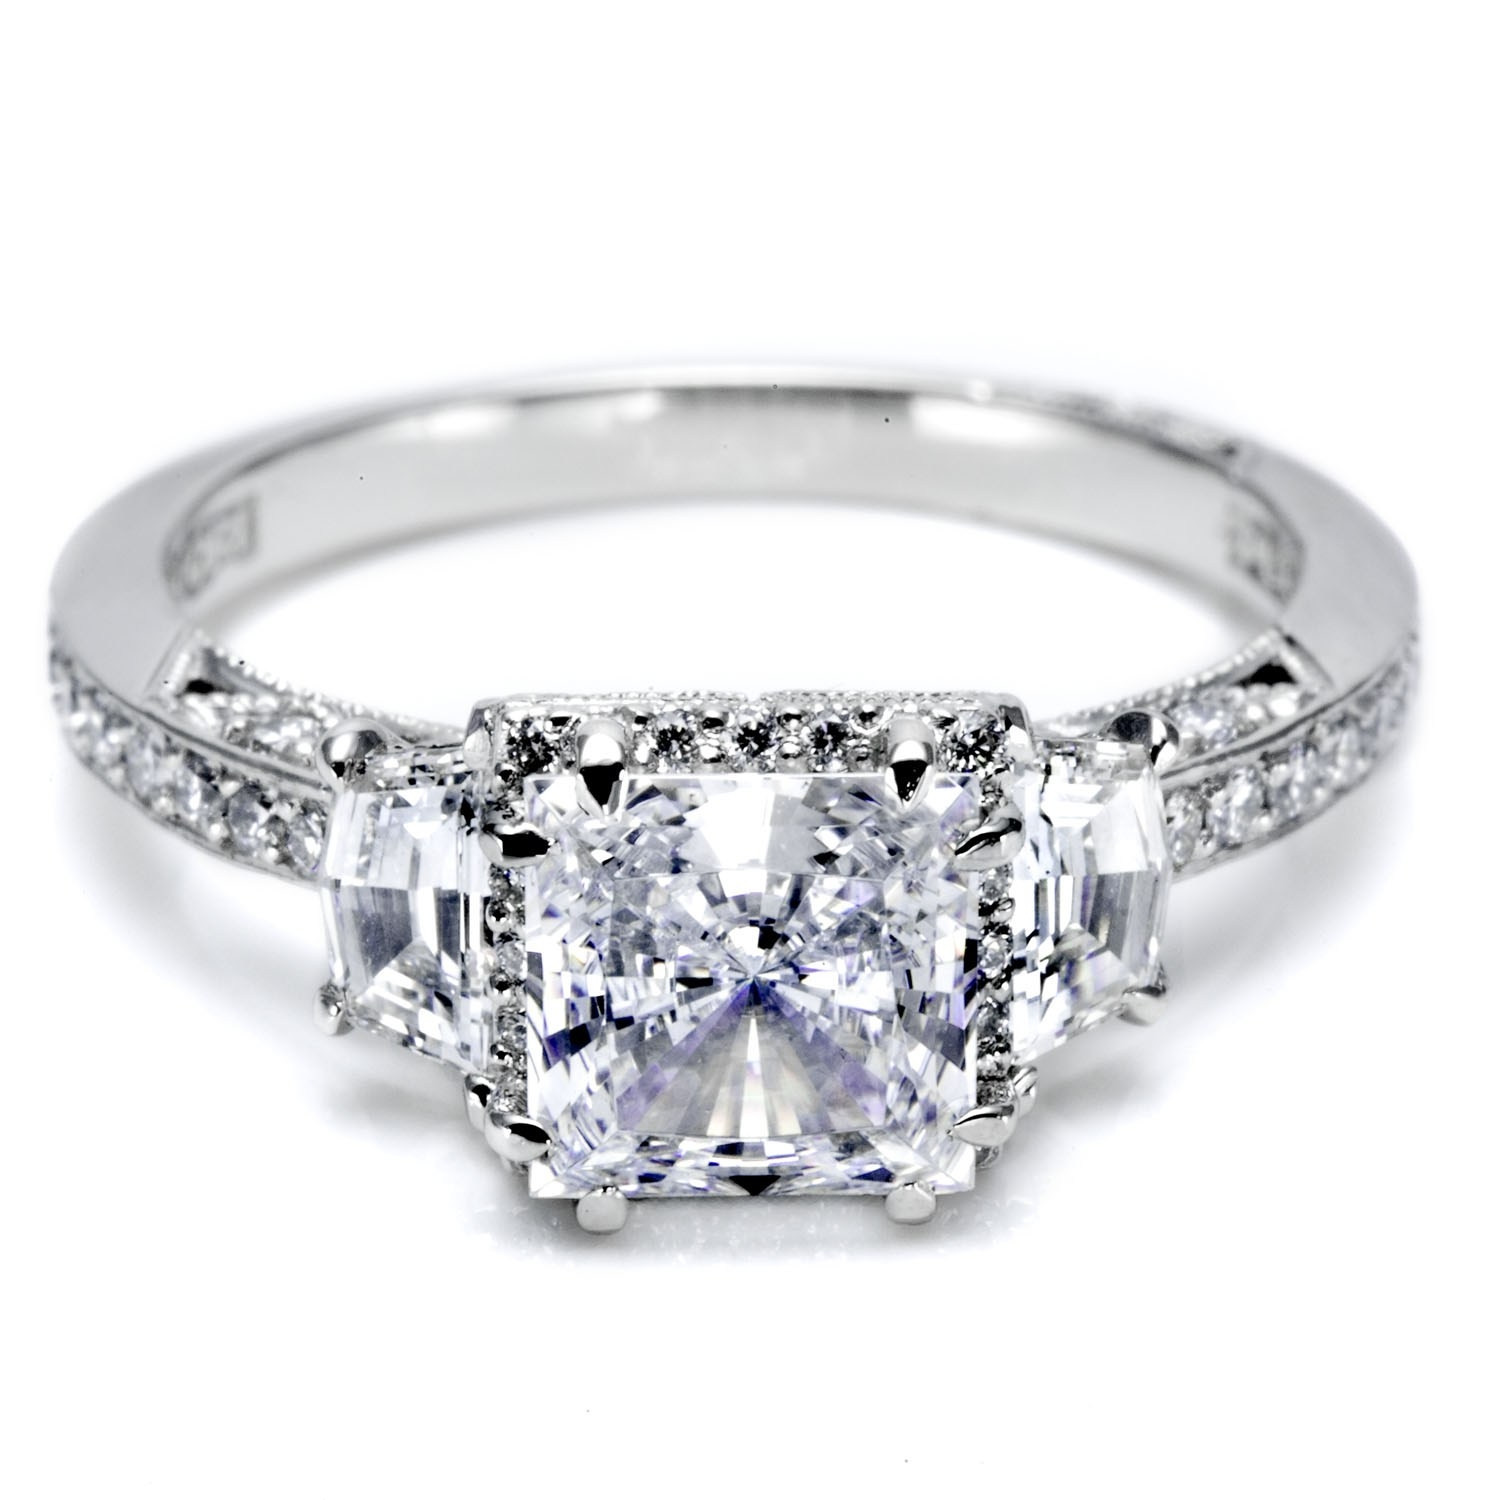 Wedding Rings Under 200
 Elegant engagement rings for 200 dollars Matvuk